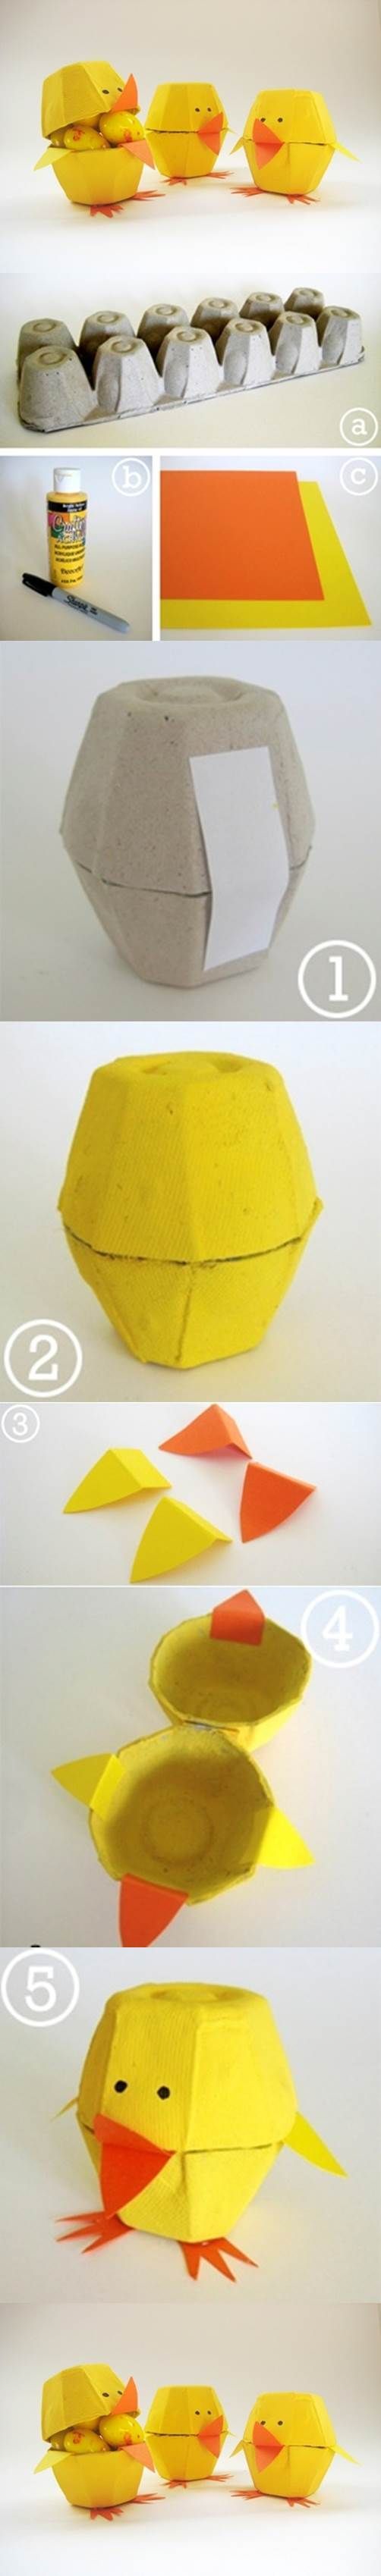 Cartón de huevos Craft – Lovely 2 polluelos